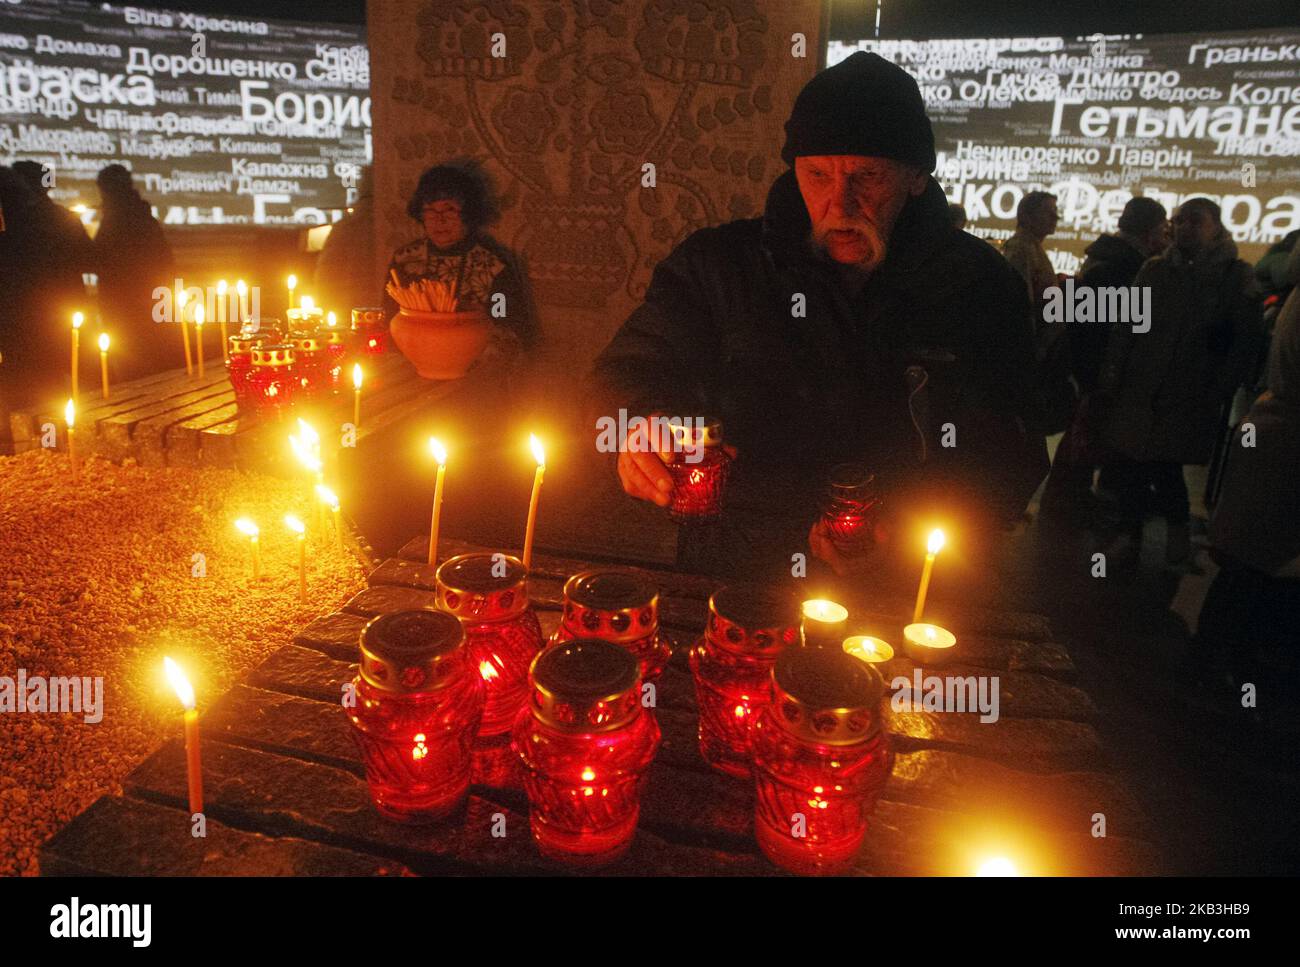 Ein ukrainischer Mann zündet eine Kerze im Gedenken an die Opfer der Großen Hungersnot (Holodomor) in der Ukraine von 1932-1933, an einem Denkmal für die Opfer des Holodomor in Kiew, Ukraine, 24. November 2018. Die Ukraine markierte 85 Jahre seit der Stalin-Ära große Hungersnot (der Holodomor). Die Hungersnot von 1932-33 fand statt, als die Ernten zurückgingen und die Polizei des sowjetischen Diktators Josef Stalin die brutale Politik der Kollektivierung der Landwirtschaft durch die Beschlagnahme von Getreide und anderen Lebensmitteln durchsetzte. Das Ergebnis war der Tod von mehr als fünf Millionen Menschen, der von vielen als Völkermord angesehen wird. (Foto von NurPhoto) Stockfoto